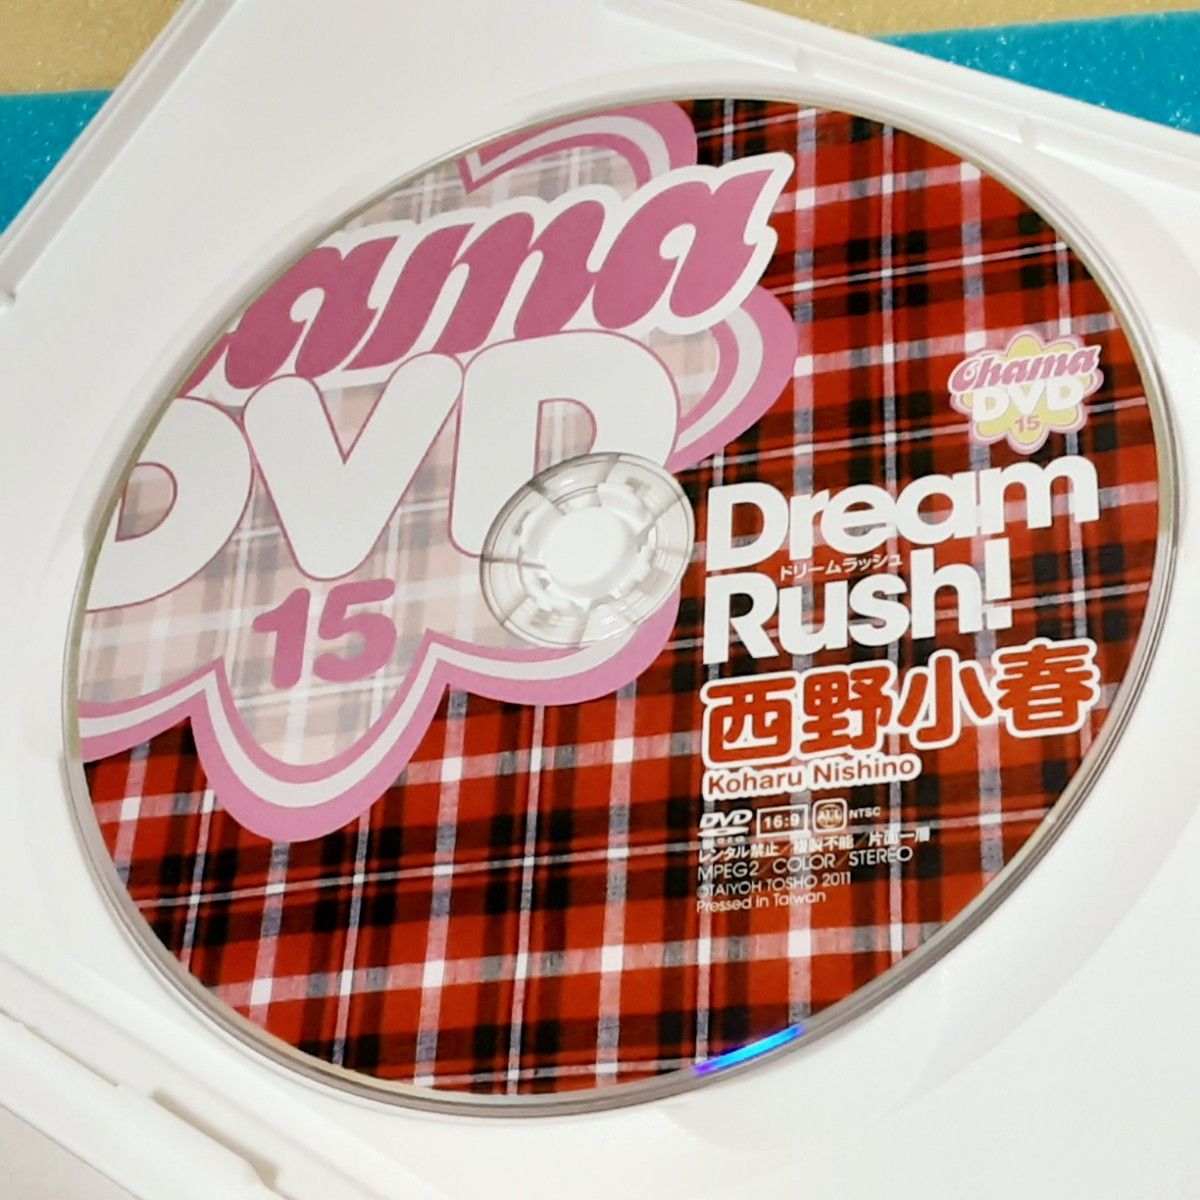 西野小春「ドリームラッシュ!」Dream Rush! Cream 15 クリーム編集部 完全監修 DVD エンジェルキュアホワイト